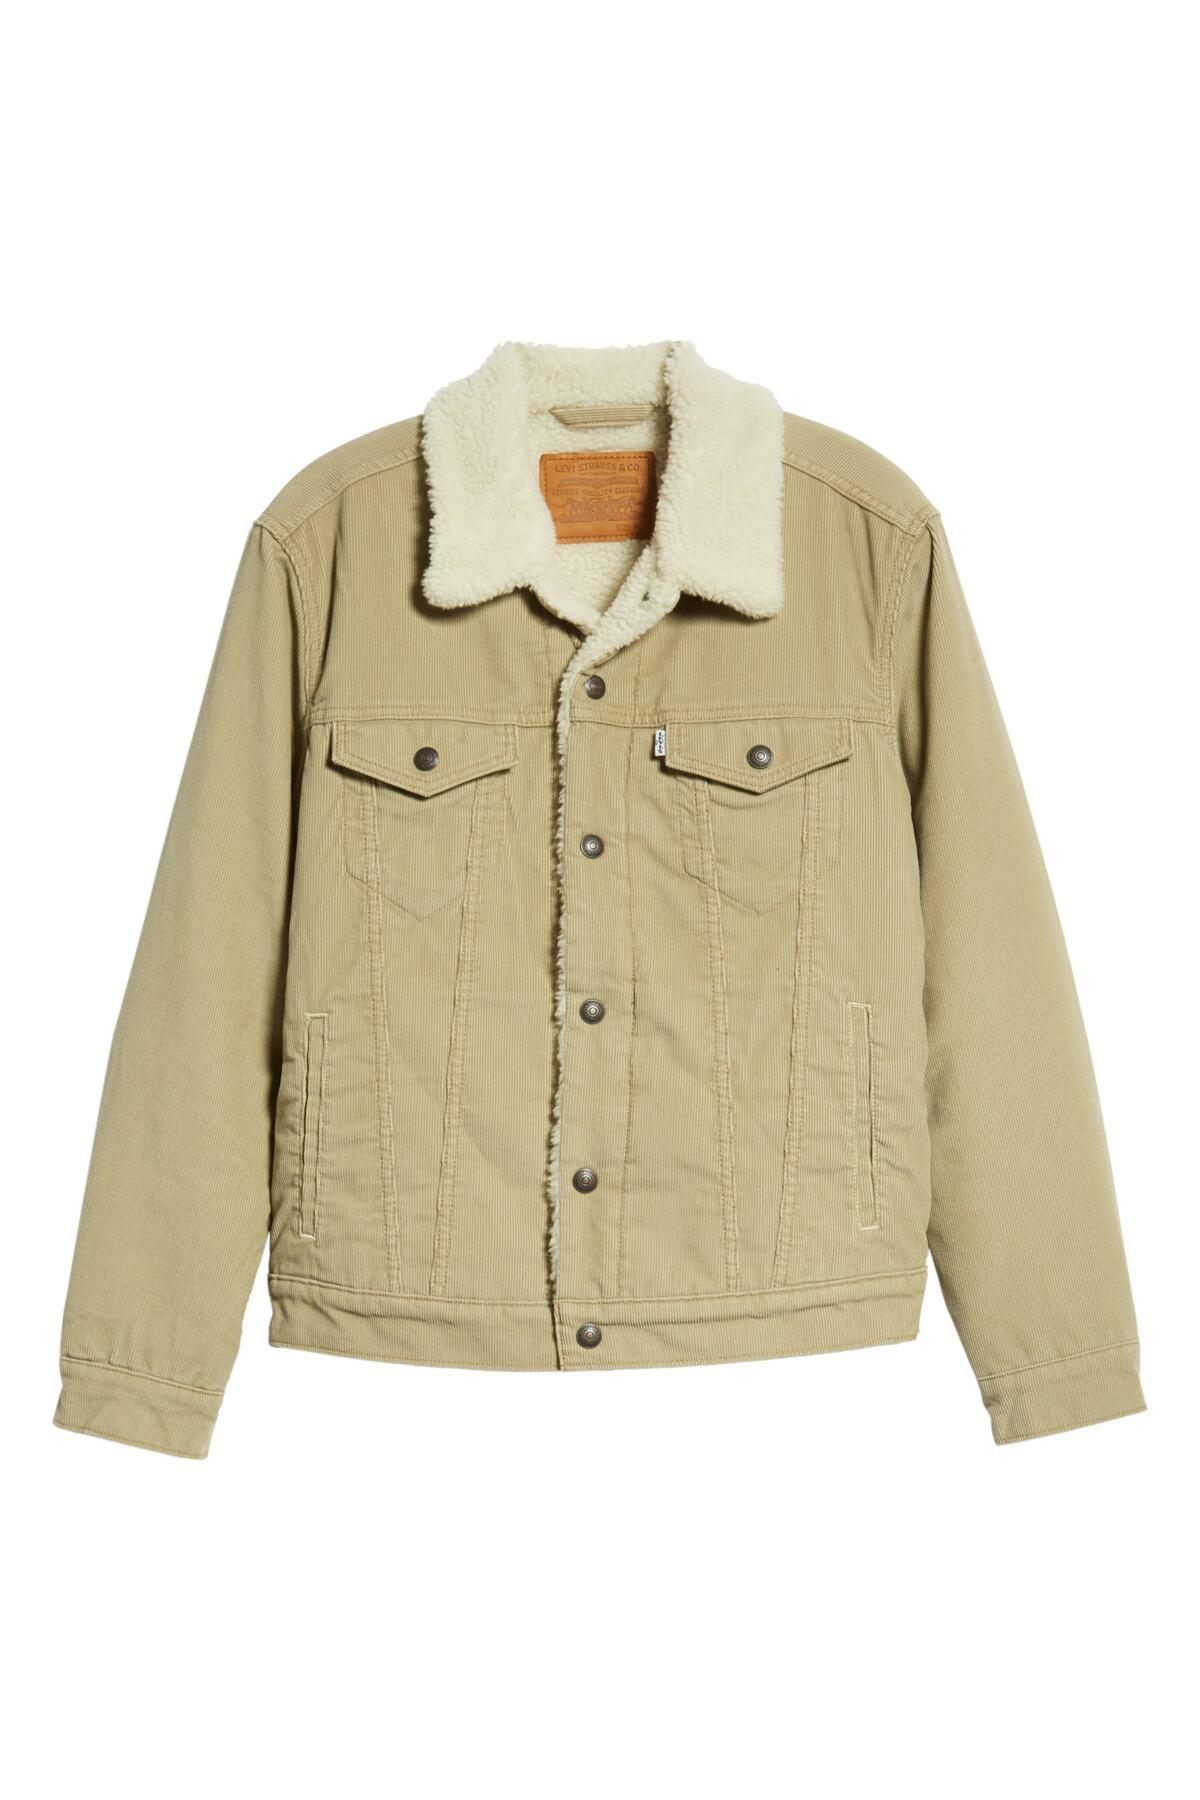 type 3 fleece lined trucker jacket